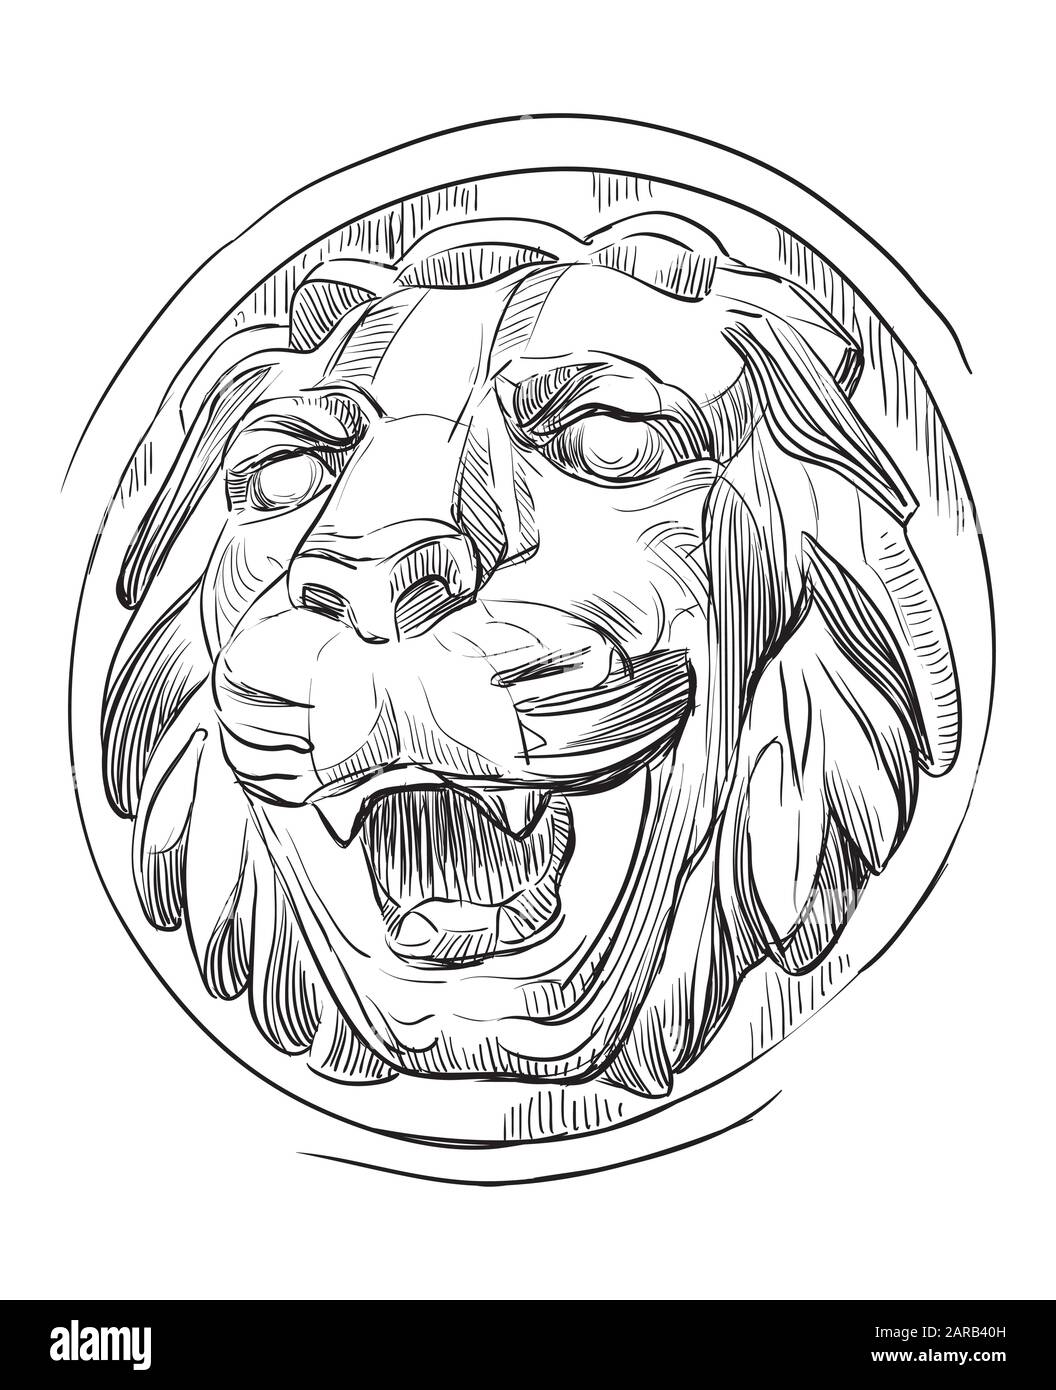 Antico bassorilievo in pietra a forma di testa di leone a bocca aperta, disegno vettoriale a mano in colore nero isolato su sfondo bianco Illustrazione Vettoriale